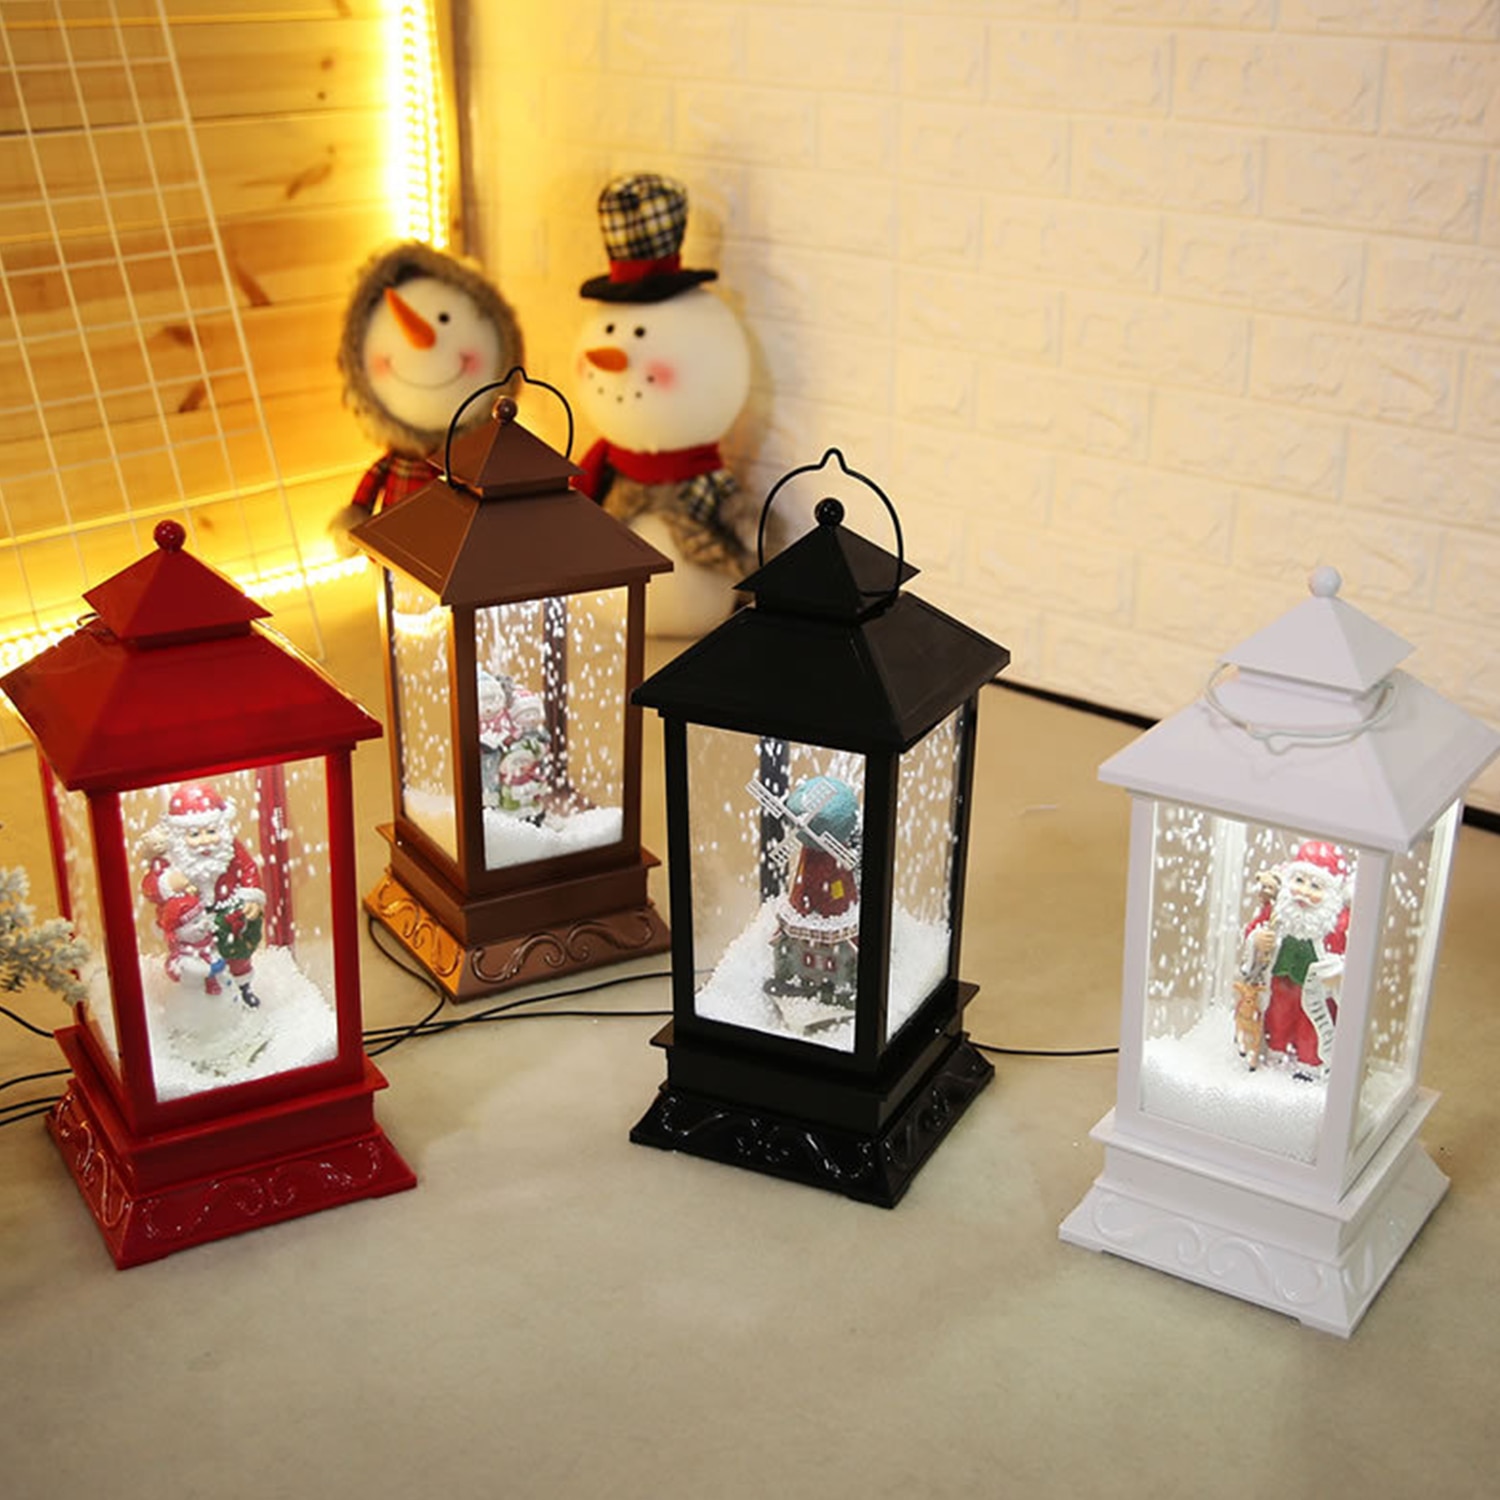 Kerst Musical Sneeuw Lantaarn Leds Kerstverlichting Lamp Kerst Decoratie Kerstman Opknoping Verlichting Met Lied Kerstcadeau